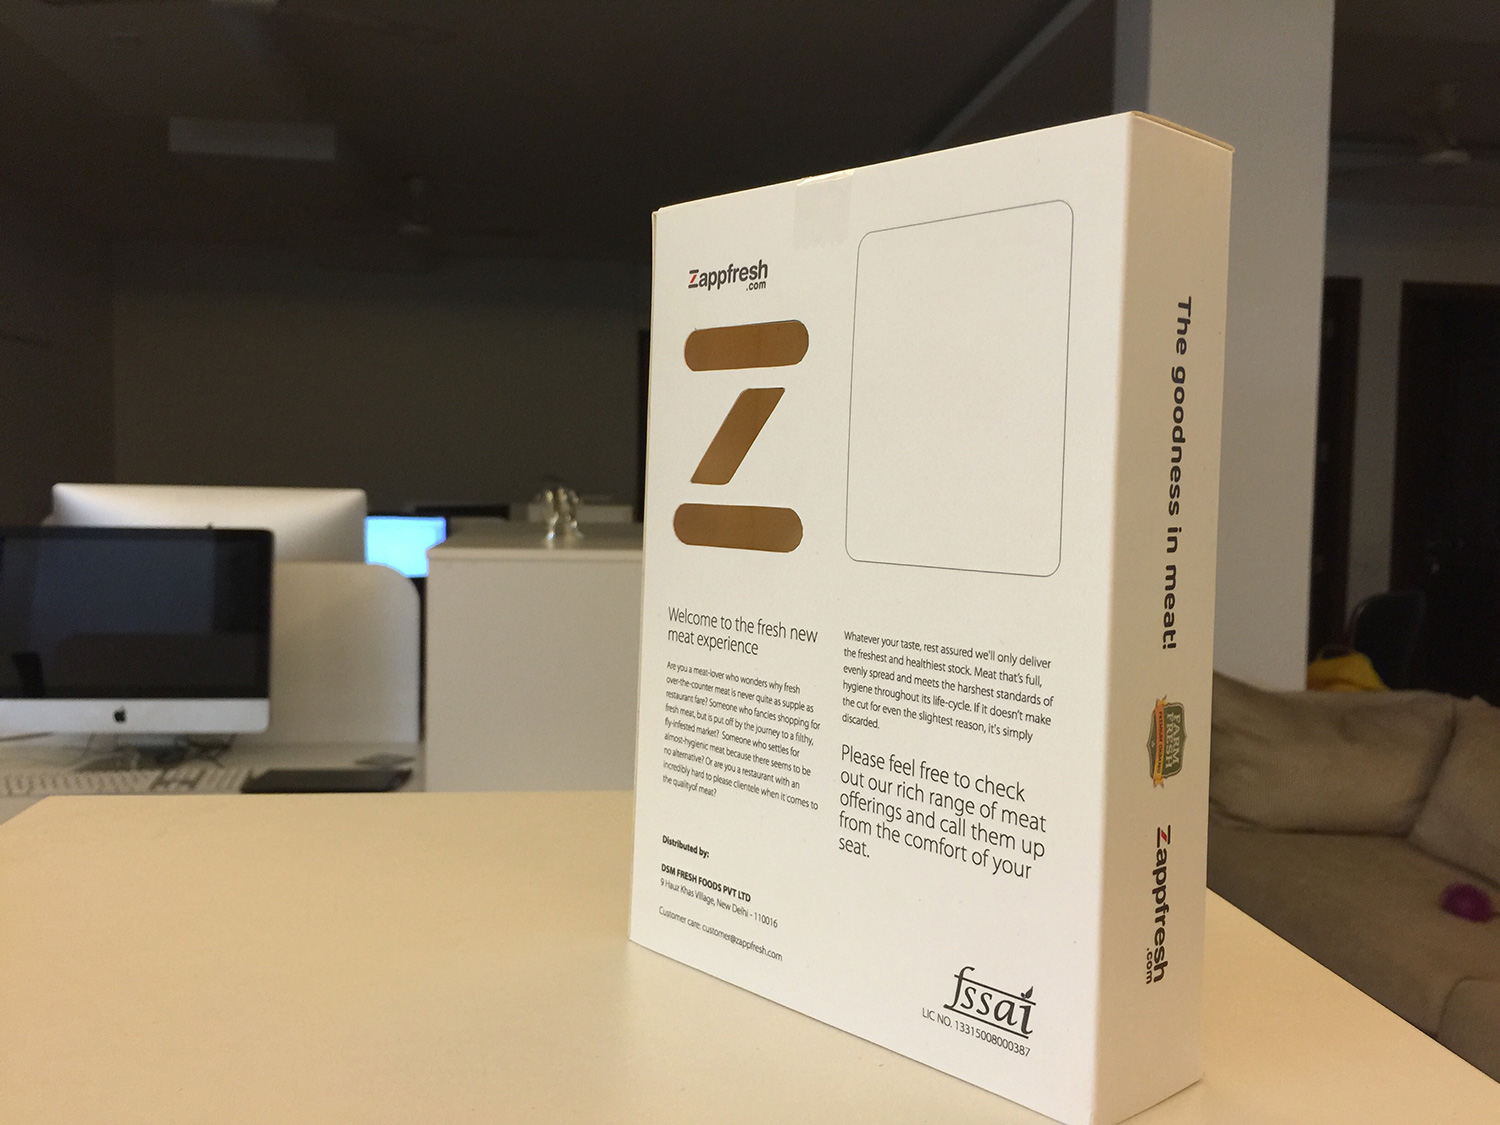 Zappfresh packaging